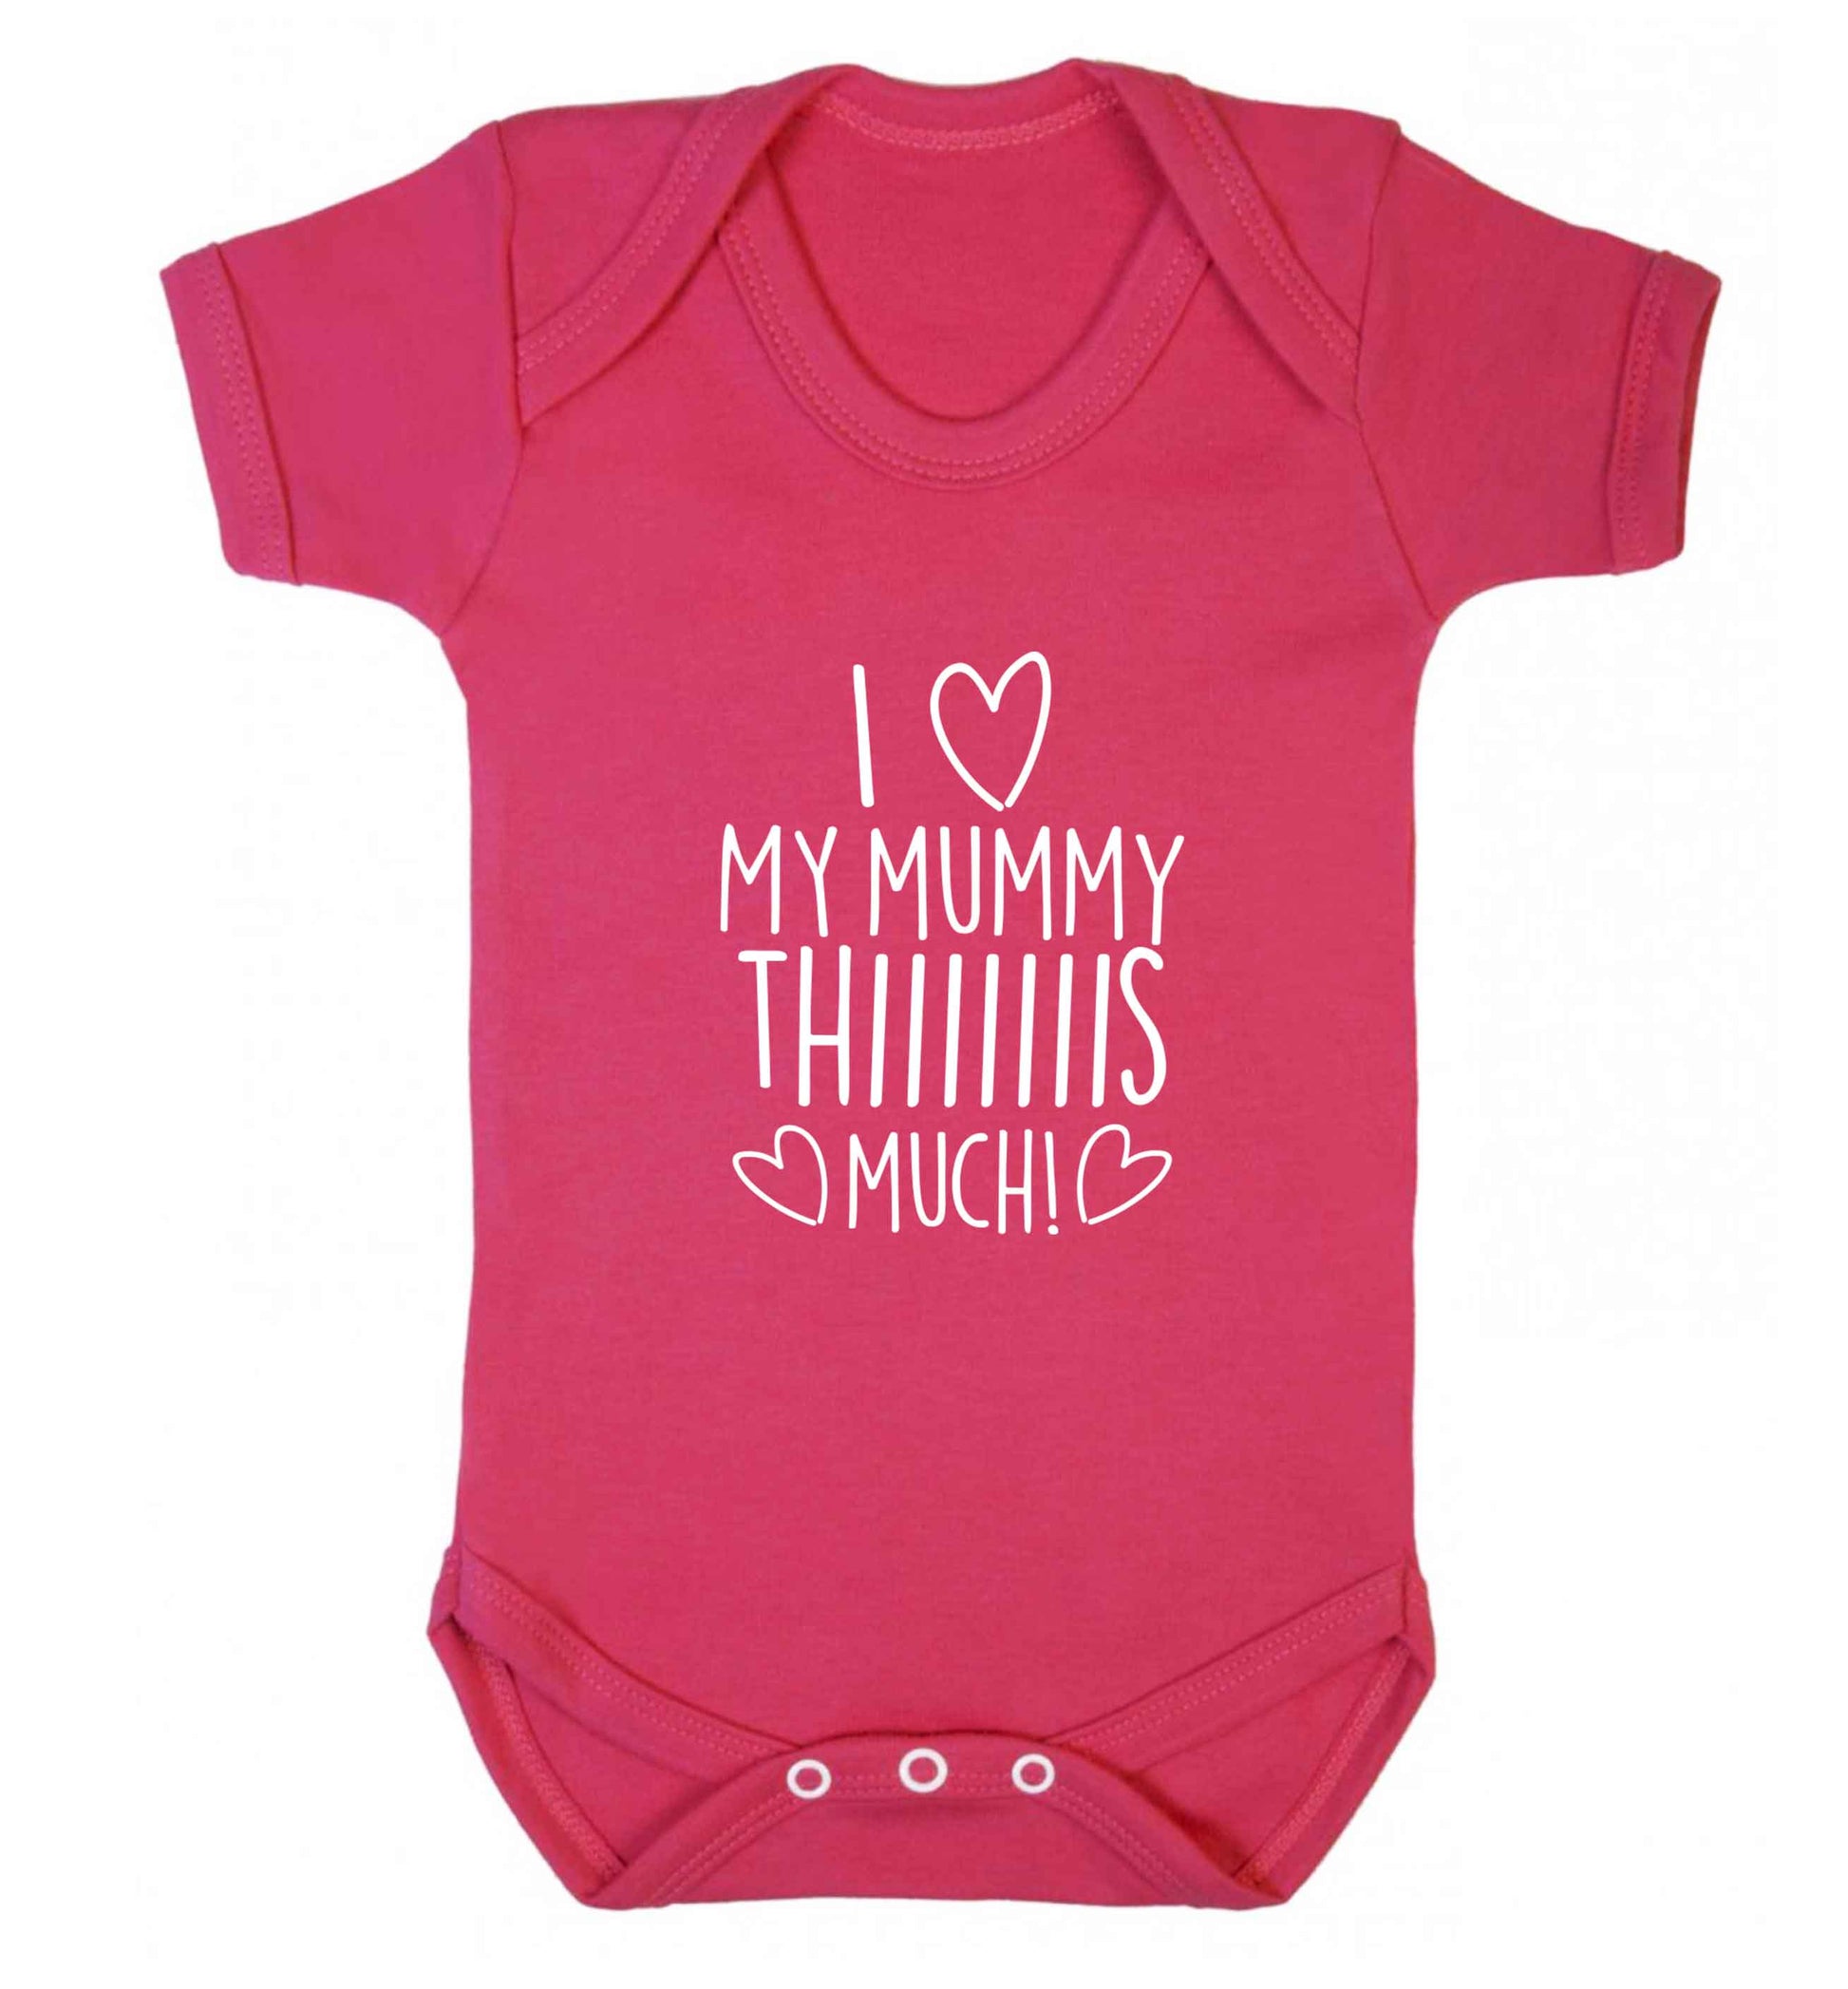 I love my mummy thiiiiis much! baby vest dark pink 18-24 months